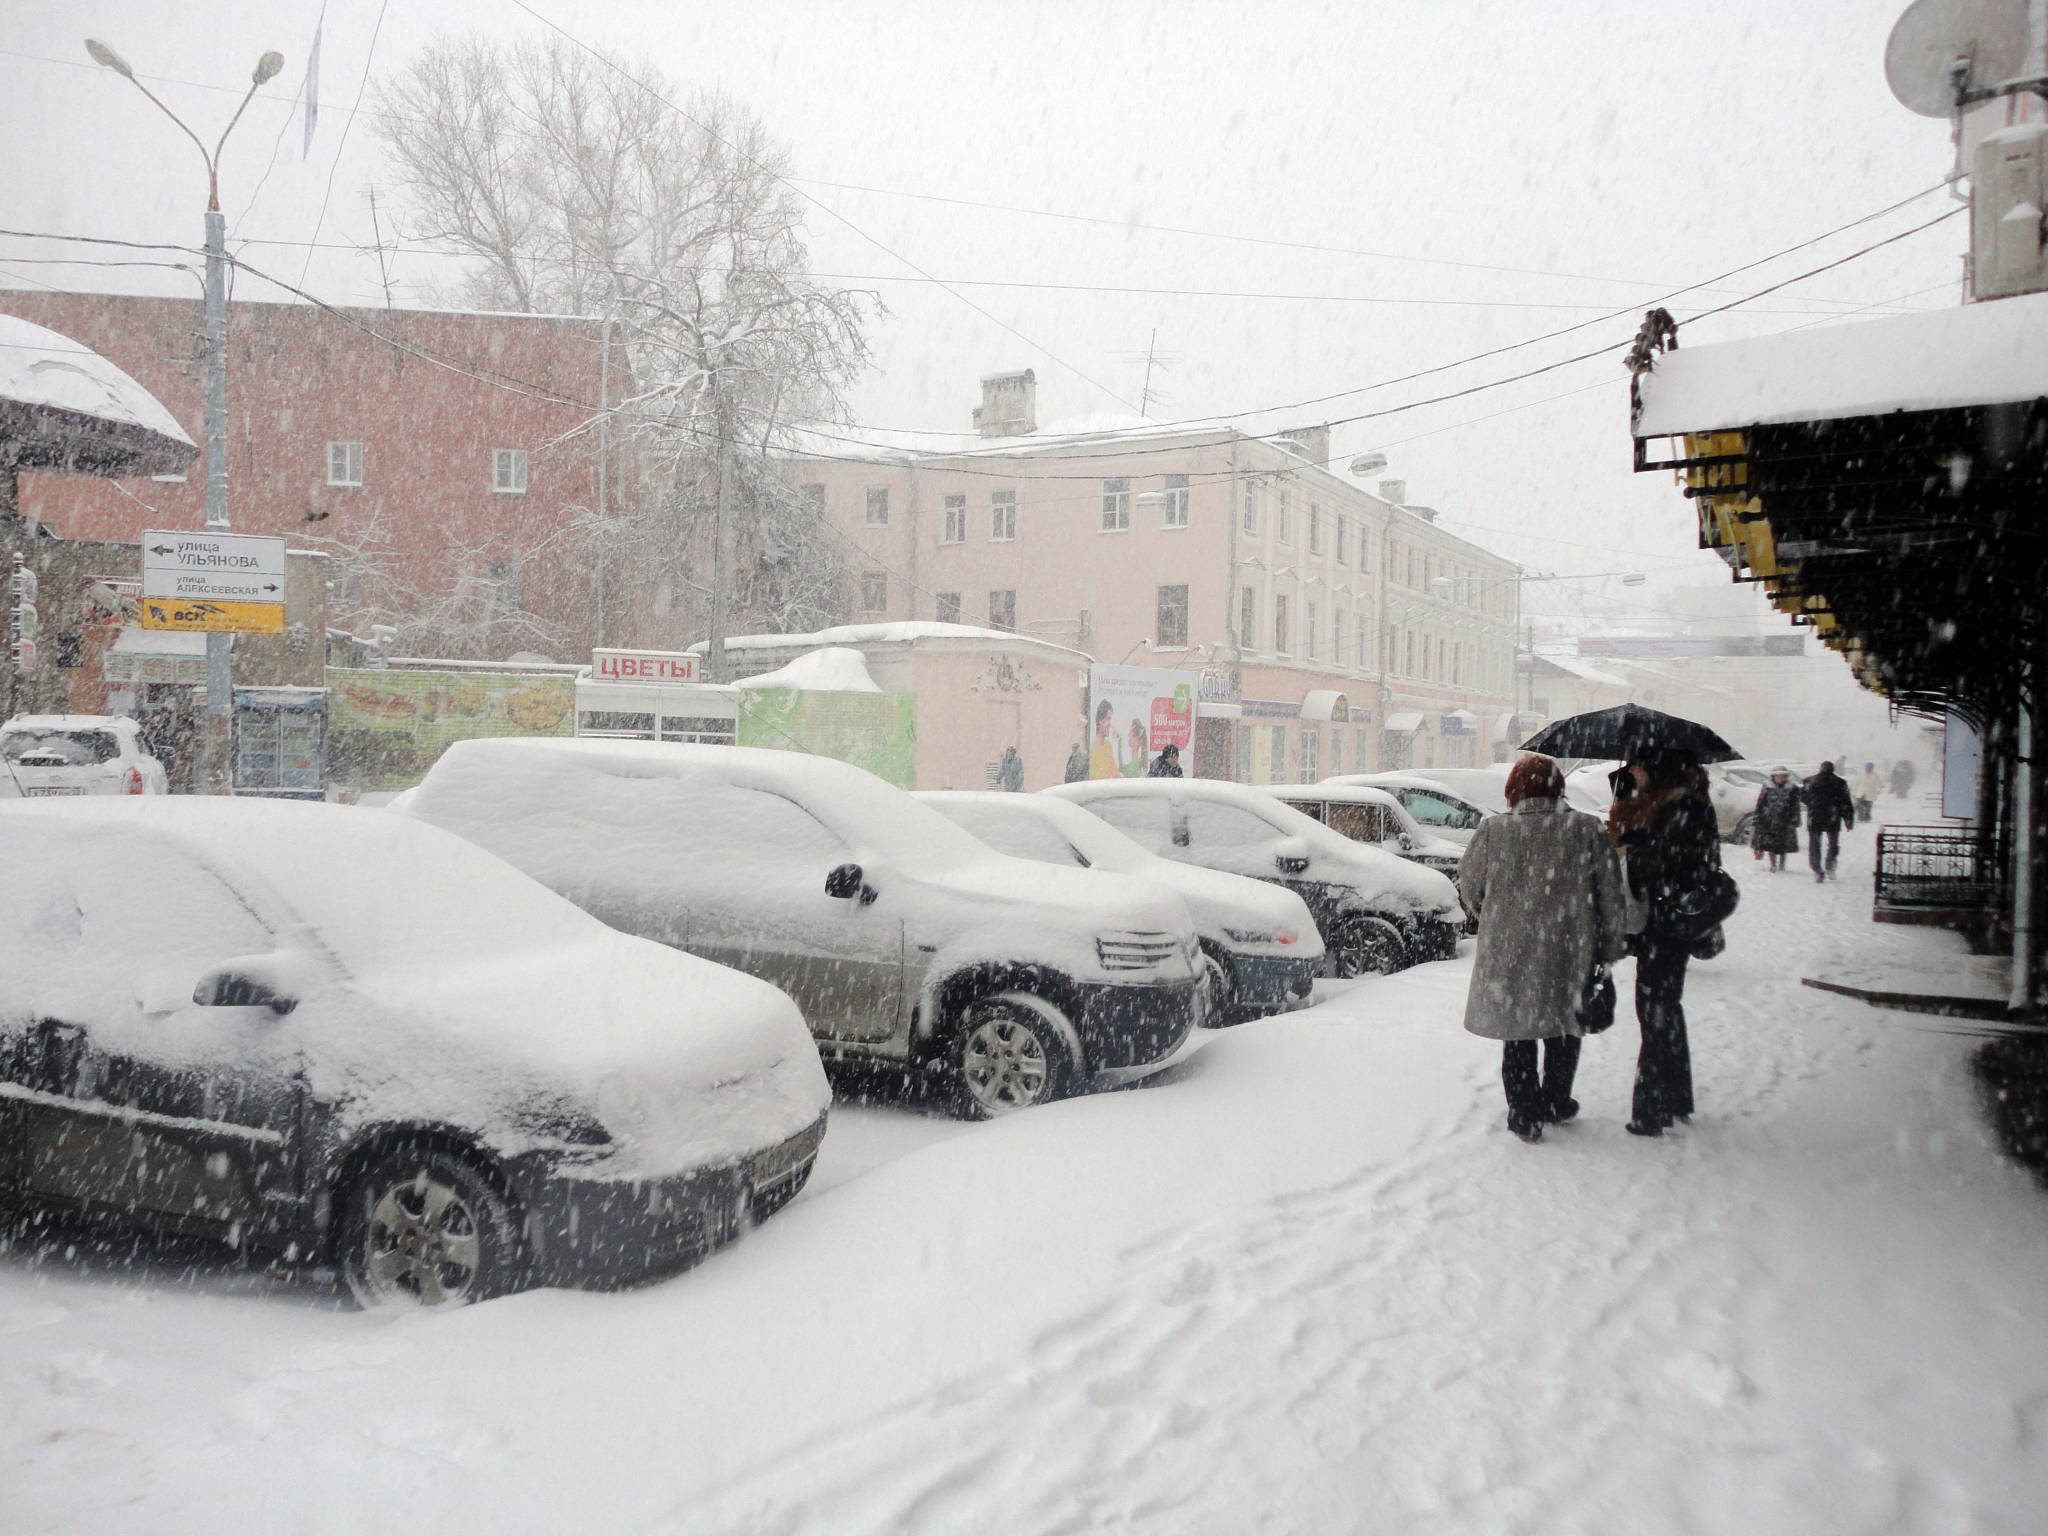 Прогноз погоды: в Нижний Новгород придет настоящая зима